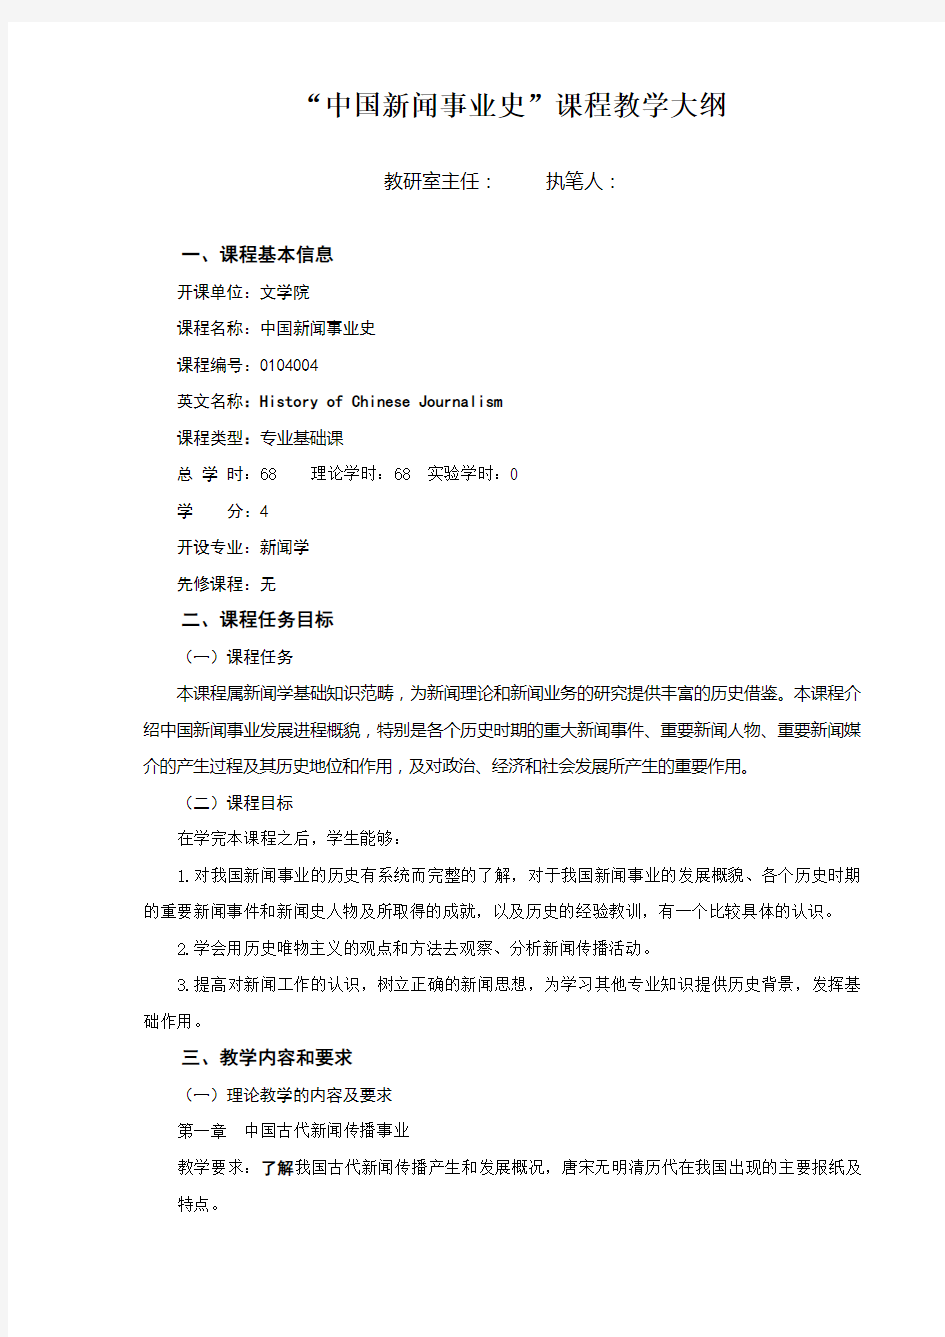 中国新闻事业史课程教学大纲